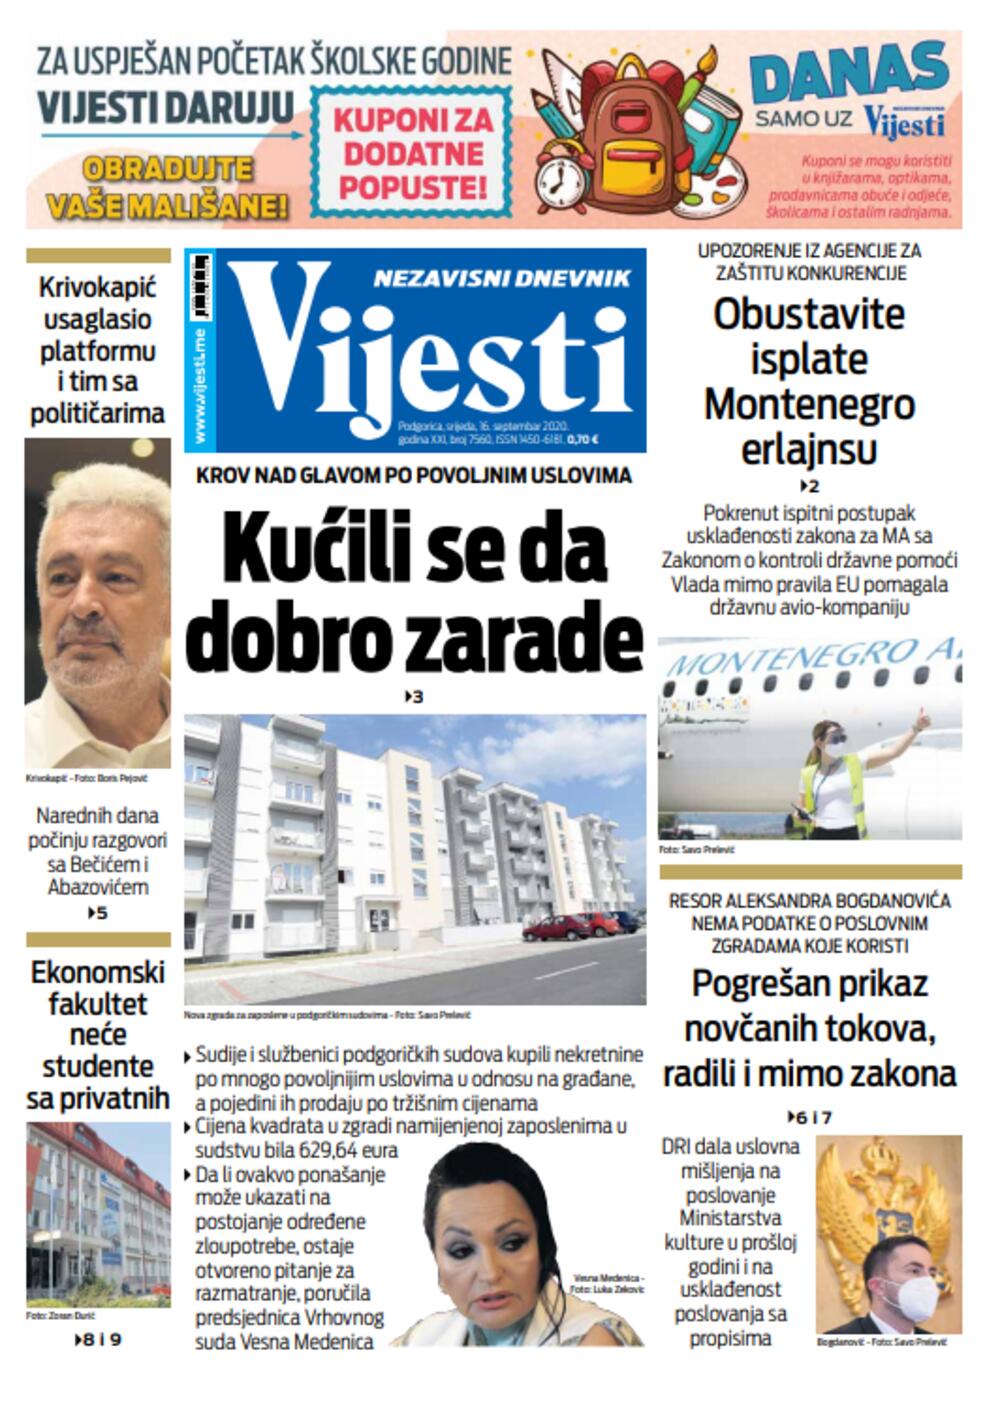 Naslovna strana "Vijesti" za 16. septembar, Foto: Vijesti